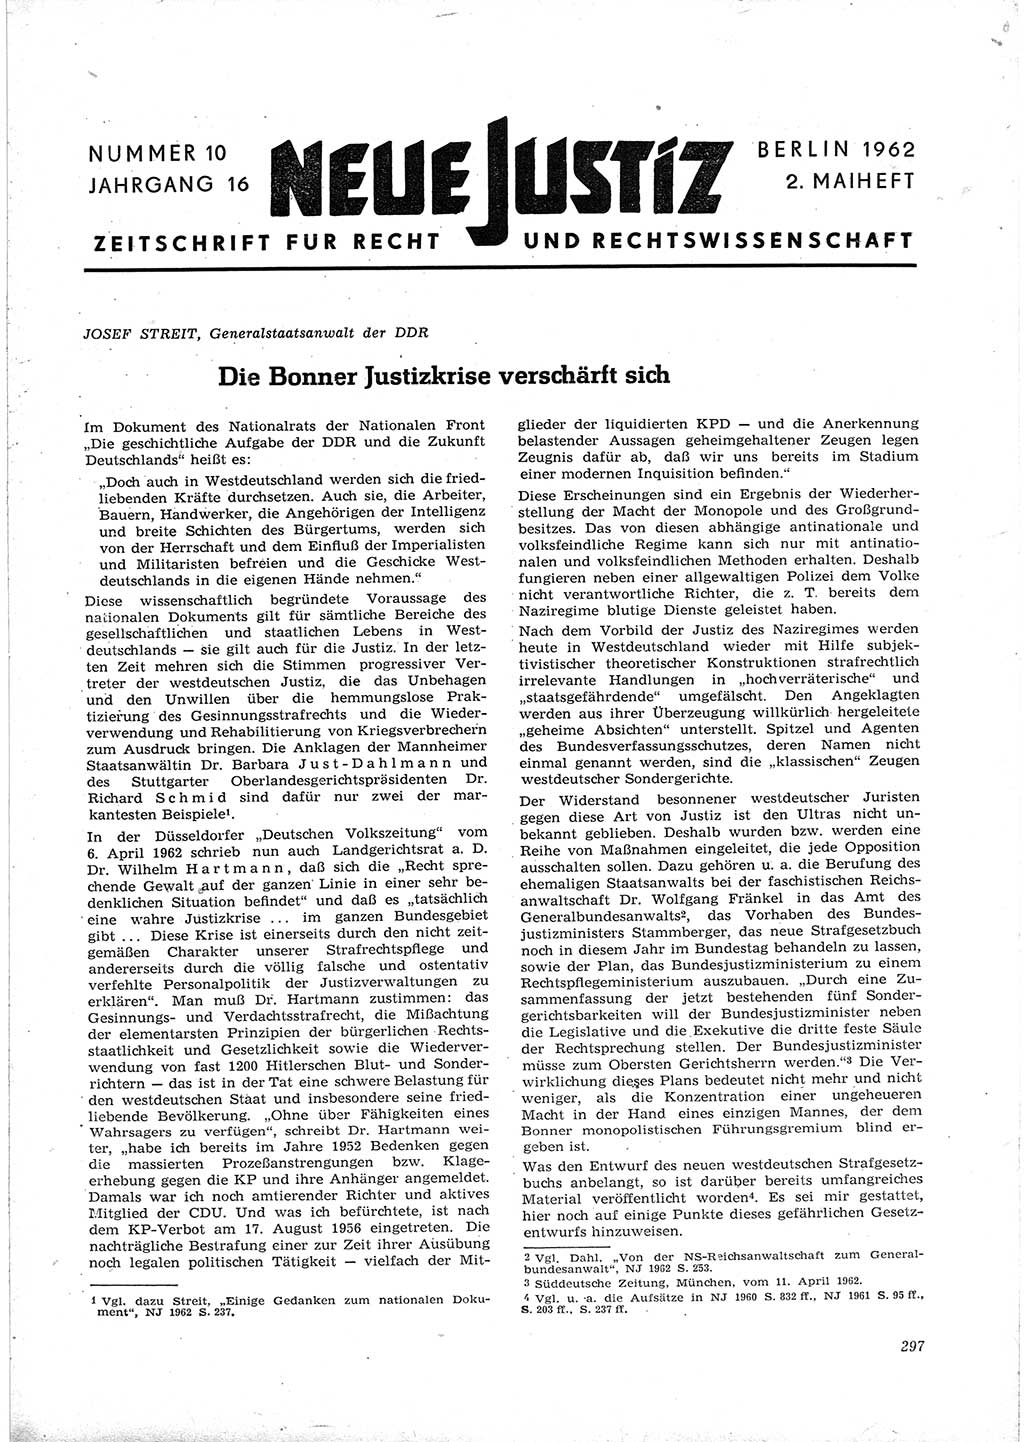 Neue Justiz (NJ), Zeitschrift für Recht und Rechtswissenschaft [Deutsche Demokratische Republik (DDR)], 16. Jahrgang 1962, Seite 297 (NJ DDR 1962, S. 297)